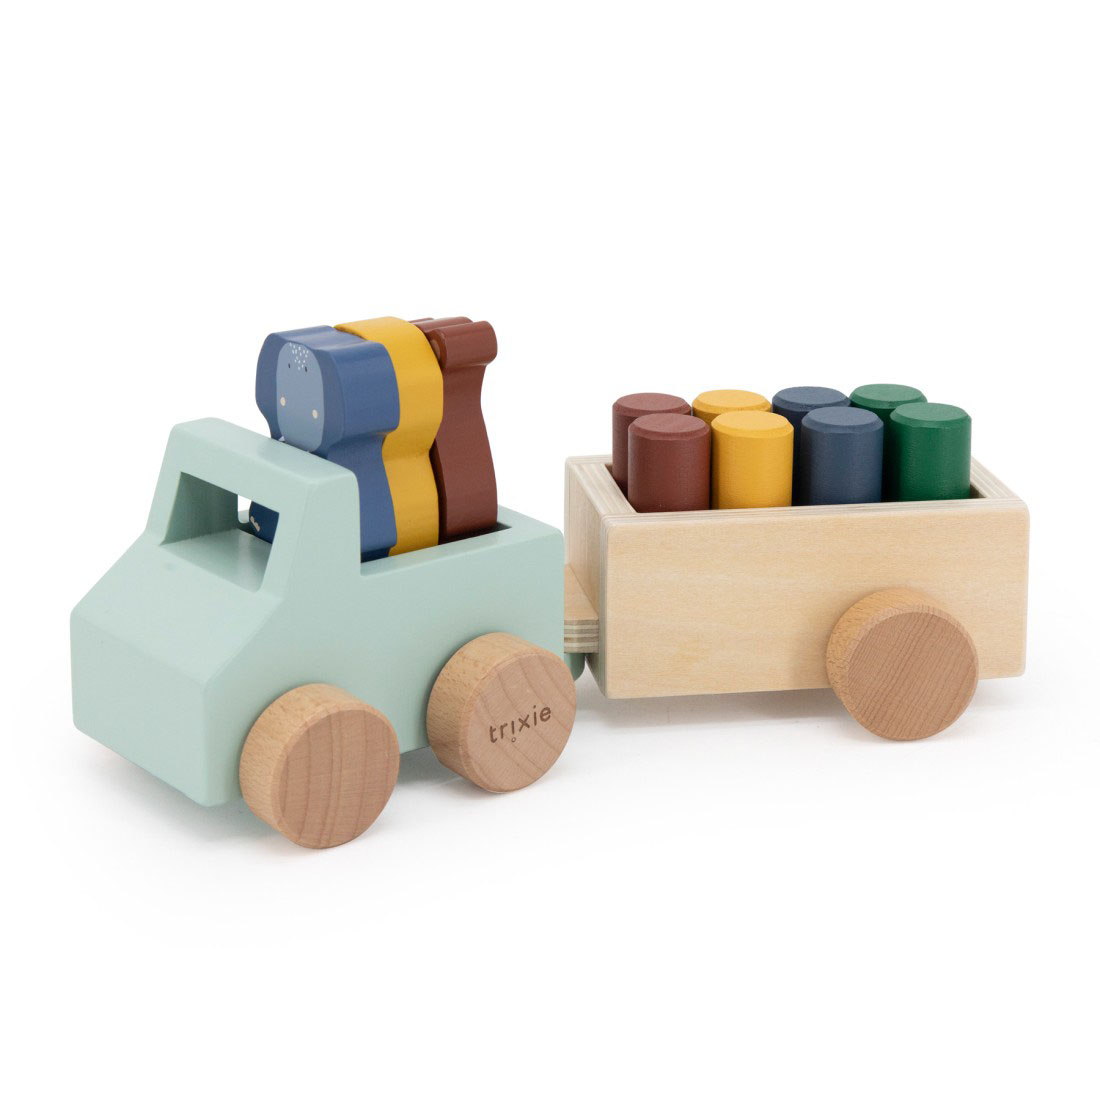 Ξύλινο παιχνίδι Trixie Wooden animal car with trailer